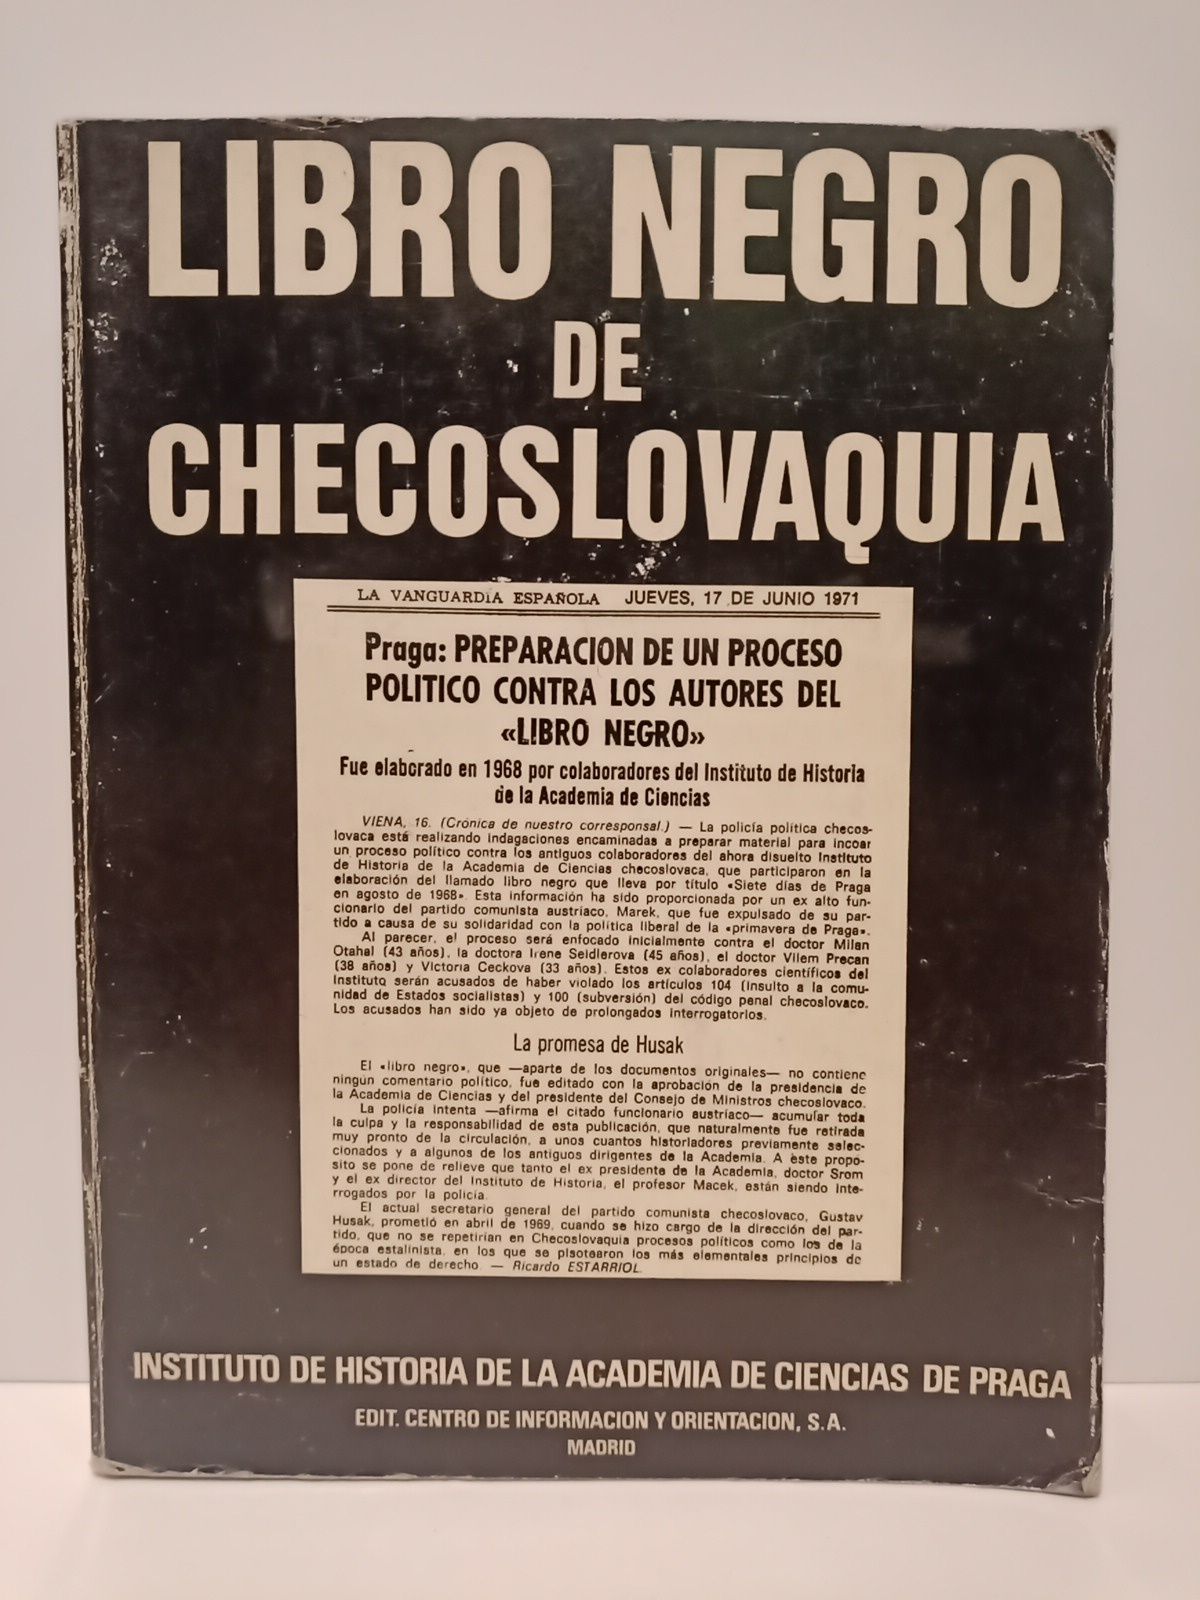 INSTITUTO DE HISTORIA DE LA ACADEMIA DE CIENCIAS DE PRAGA - Libro negro de Checoslovaquia